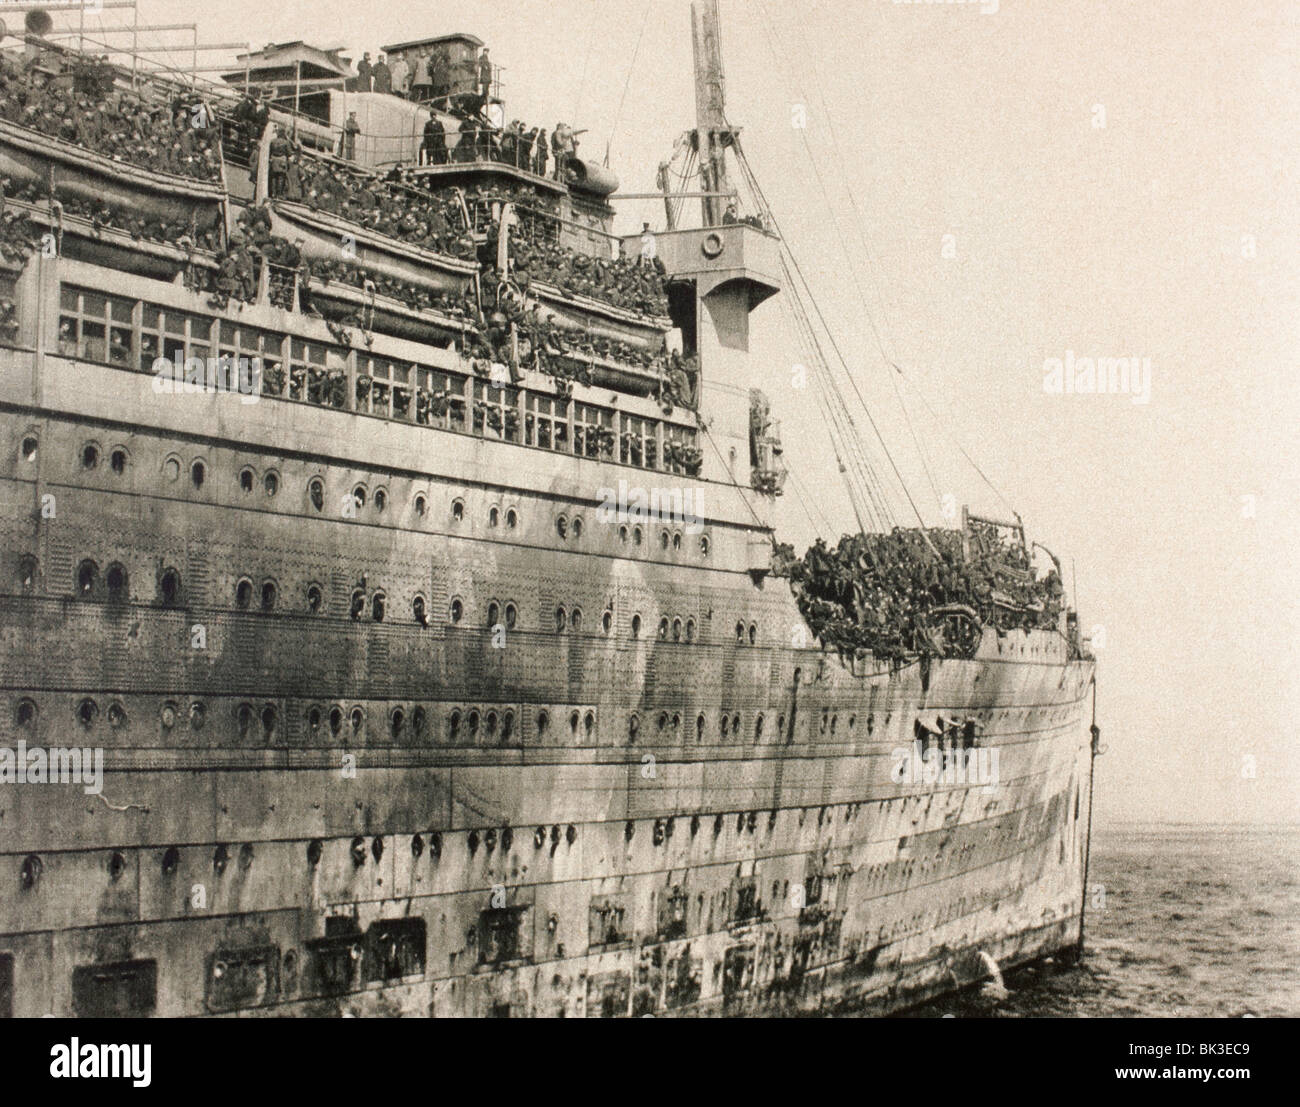 Ankunft in New York von amerikanischen Truppen Rückkehr aus Europa nach dem ersten Weltkrieg an Bord der USS Leviathan. Stockfoto